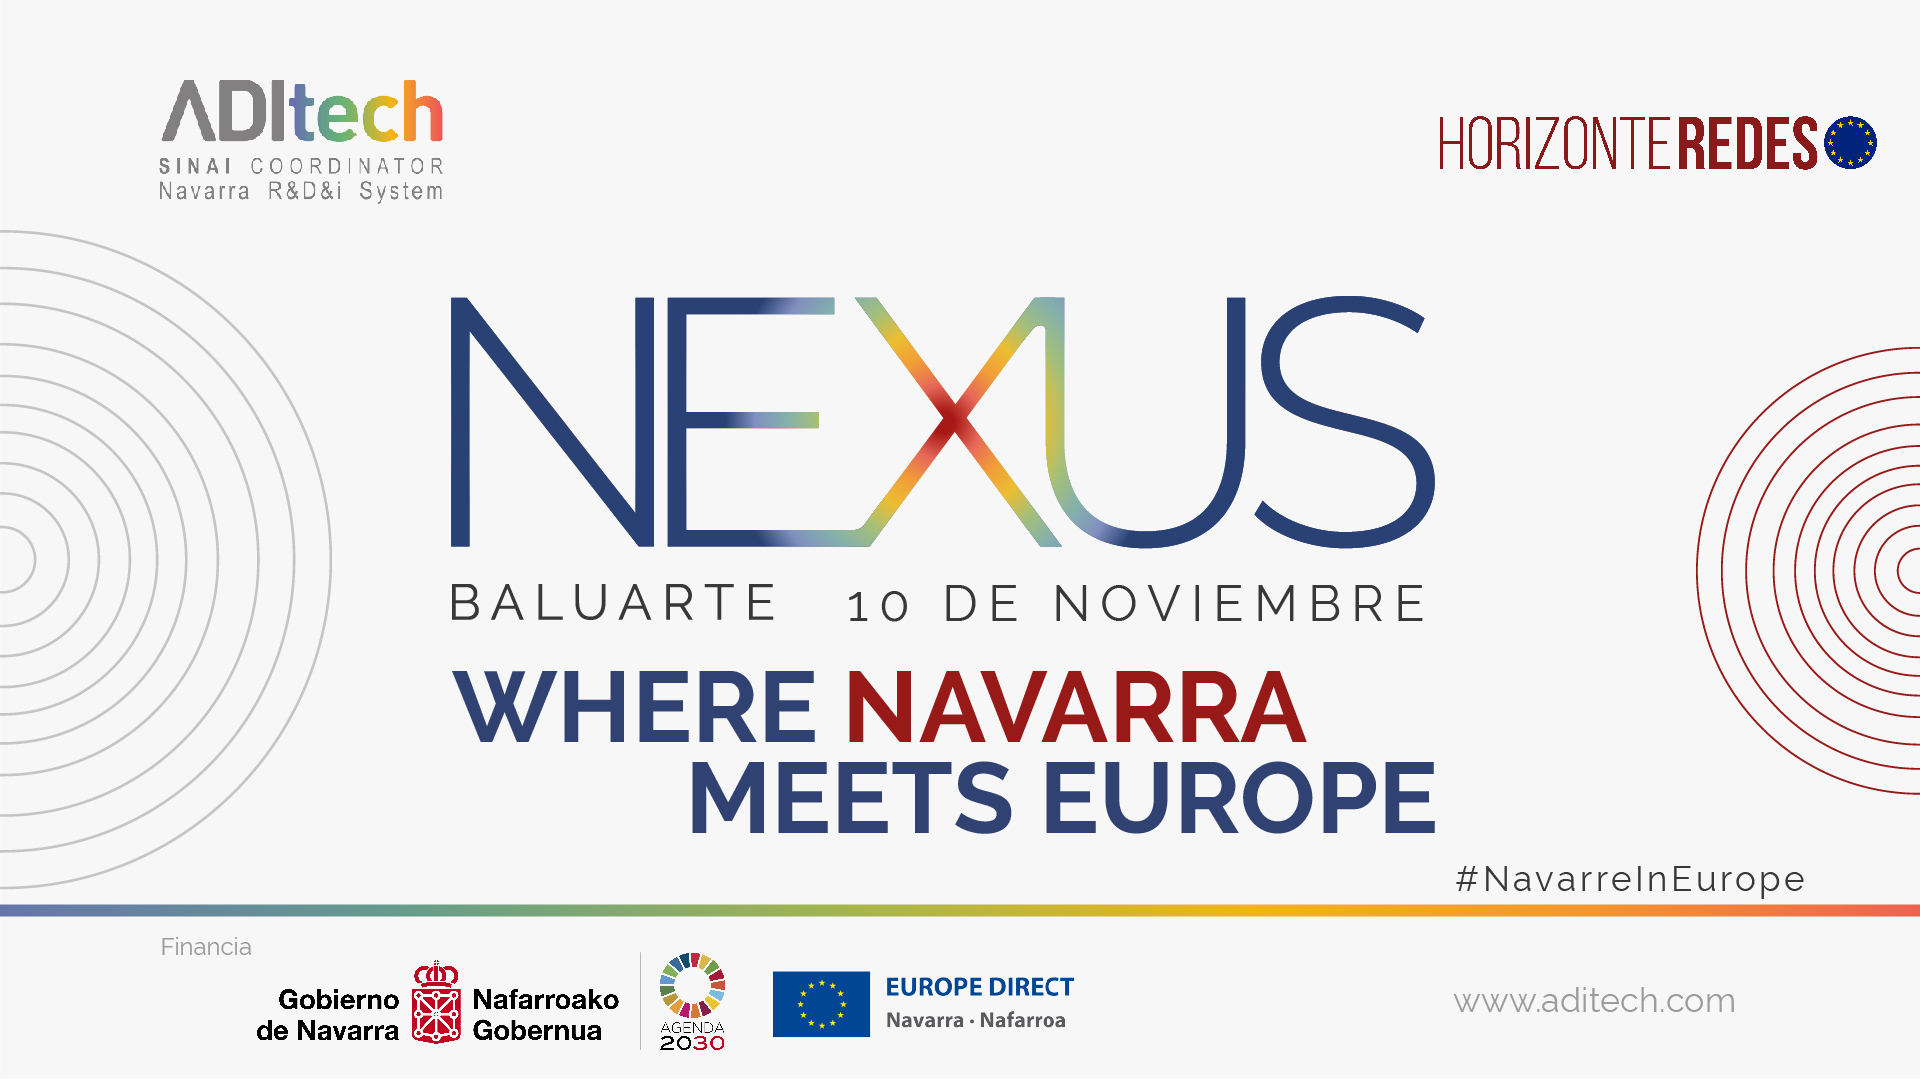 Logo Evento NEXUS - Horizonte Redes, iniciativa de ADItech